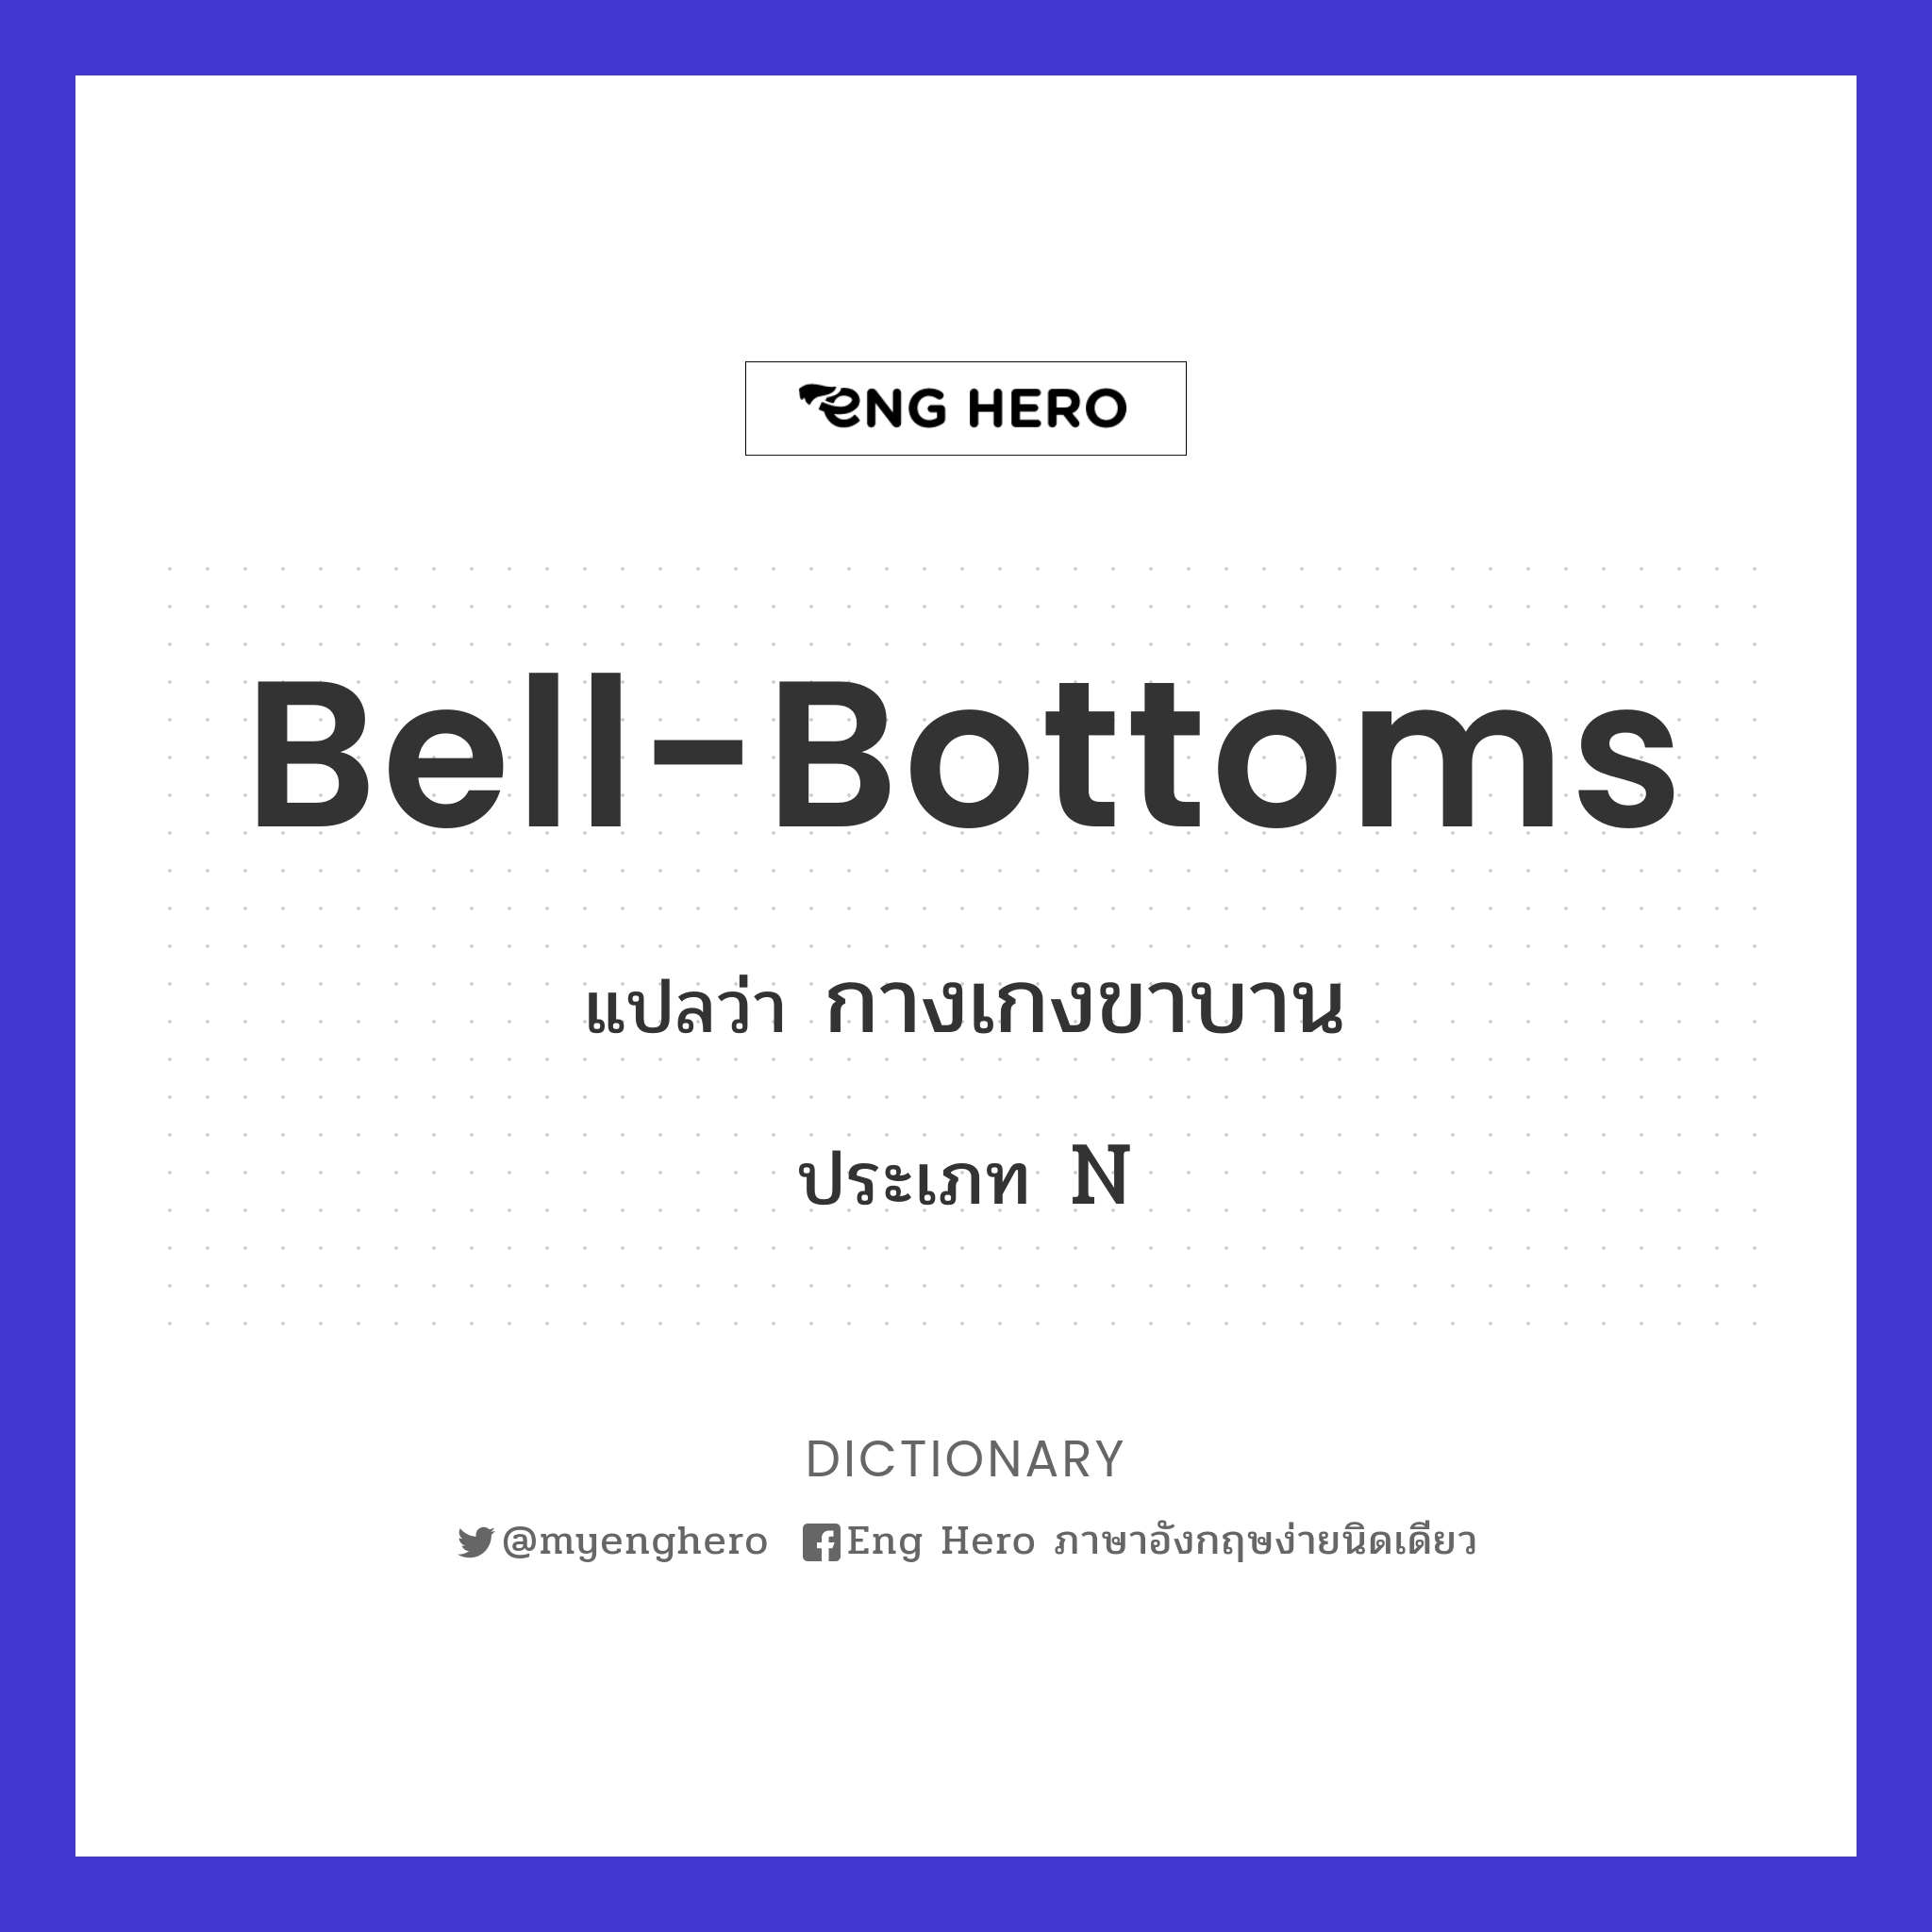 bell-bottoms